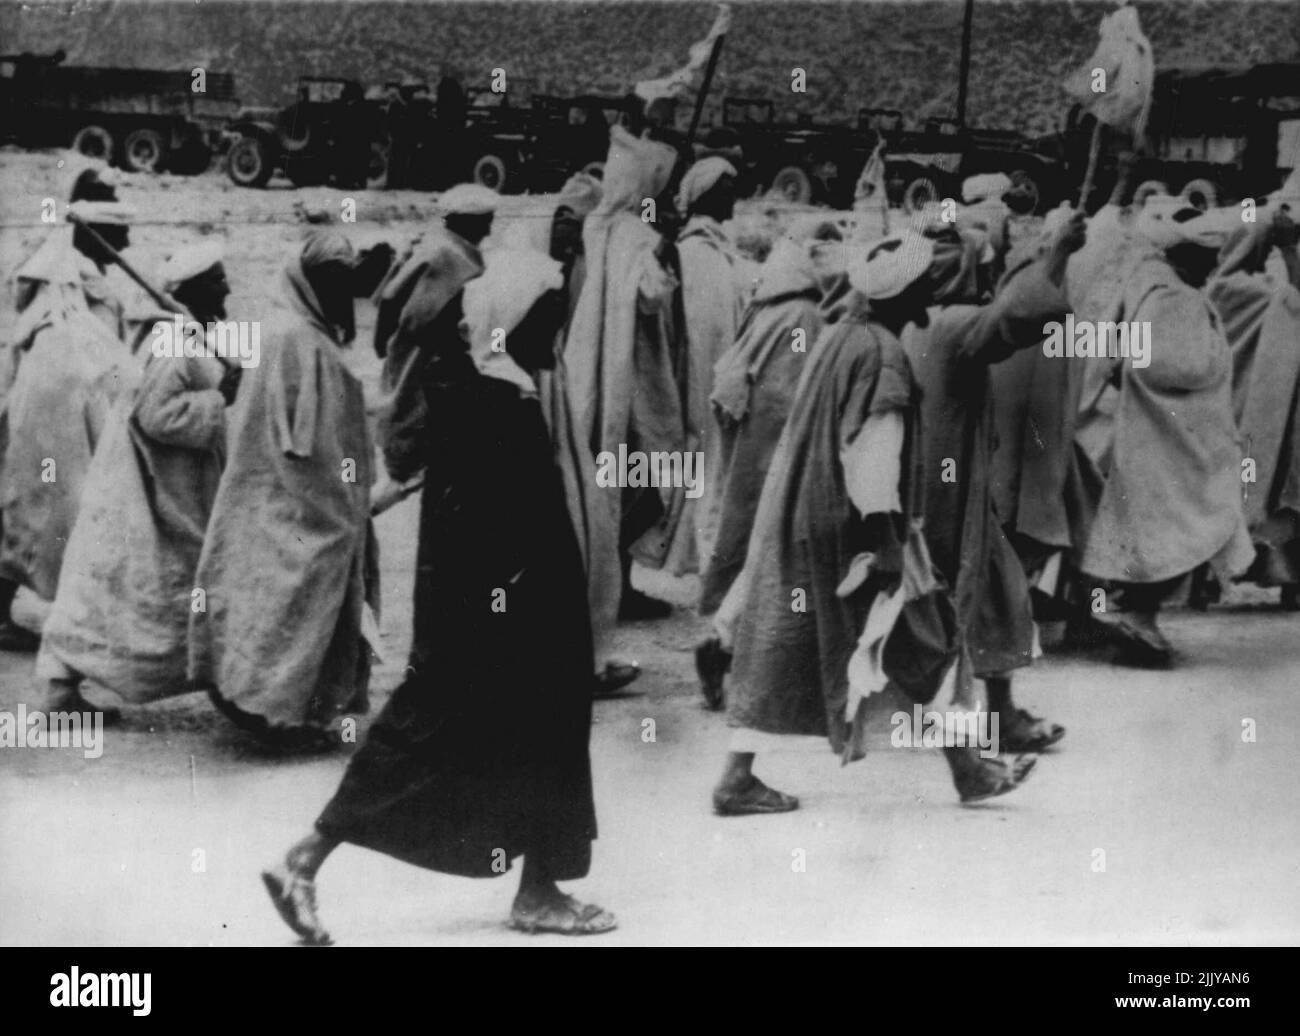 Spettacolo di ripetizione -- Berberi con bandiere bianche mentre marciano per arrendersi alle autorità francesi, 4 ottobre, dopo il massacro di ottobre 2 degli europei alla montagna marocchina nella città di Immouzer. I massacri precedenti in Marocco sono stati seguiti da simili rese. Ad una tale resa all'inizio di quest'anno. I tribesmen hanno massacrato il bestiame come sacrificio. Ottobre 6, 1955. (Foto di stampa associata). Foto Stock